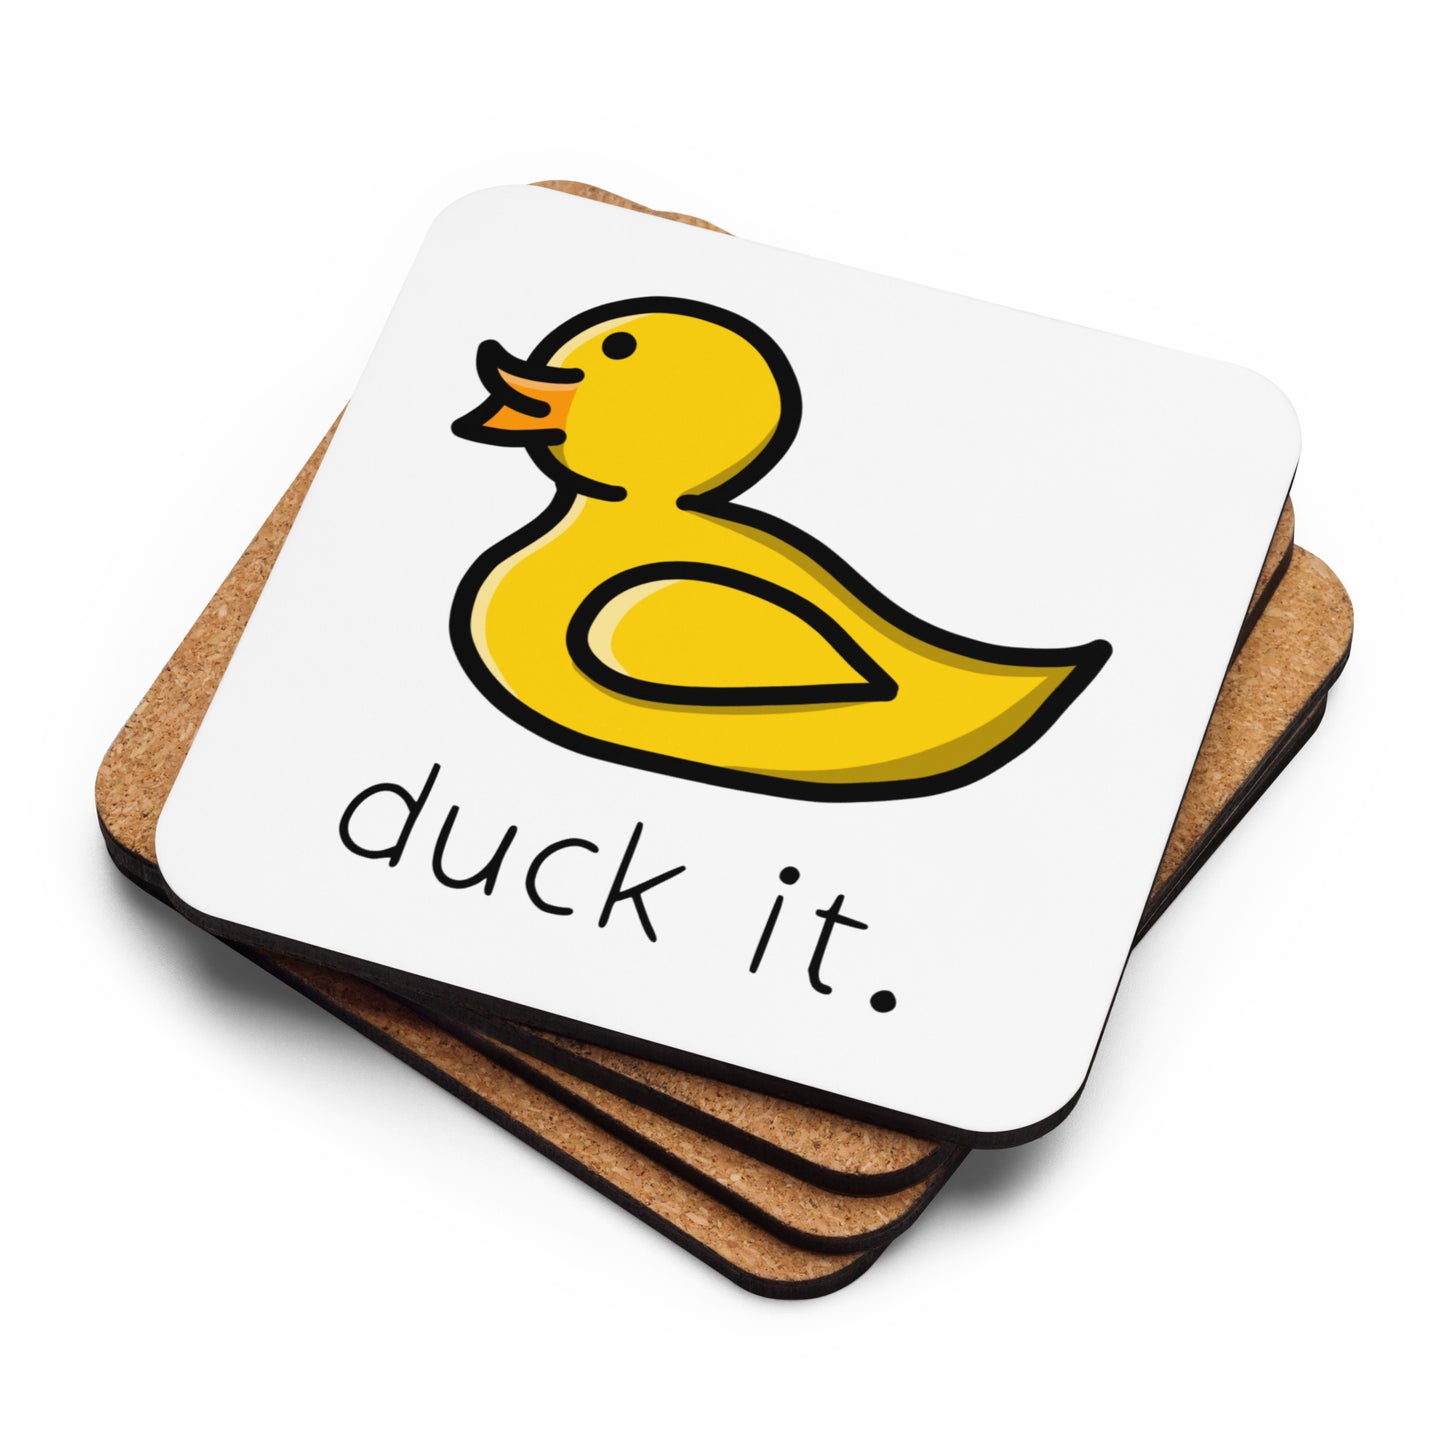 “Duck It” Cork-back coaster